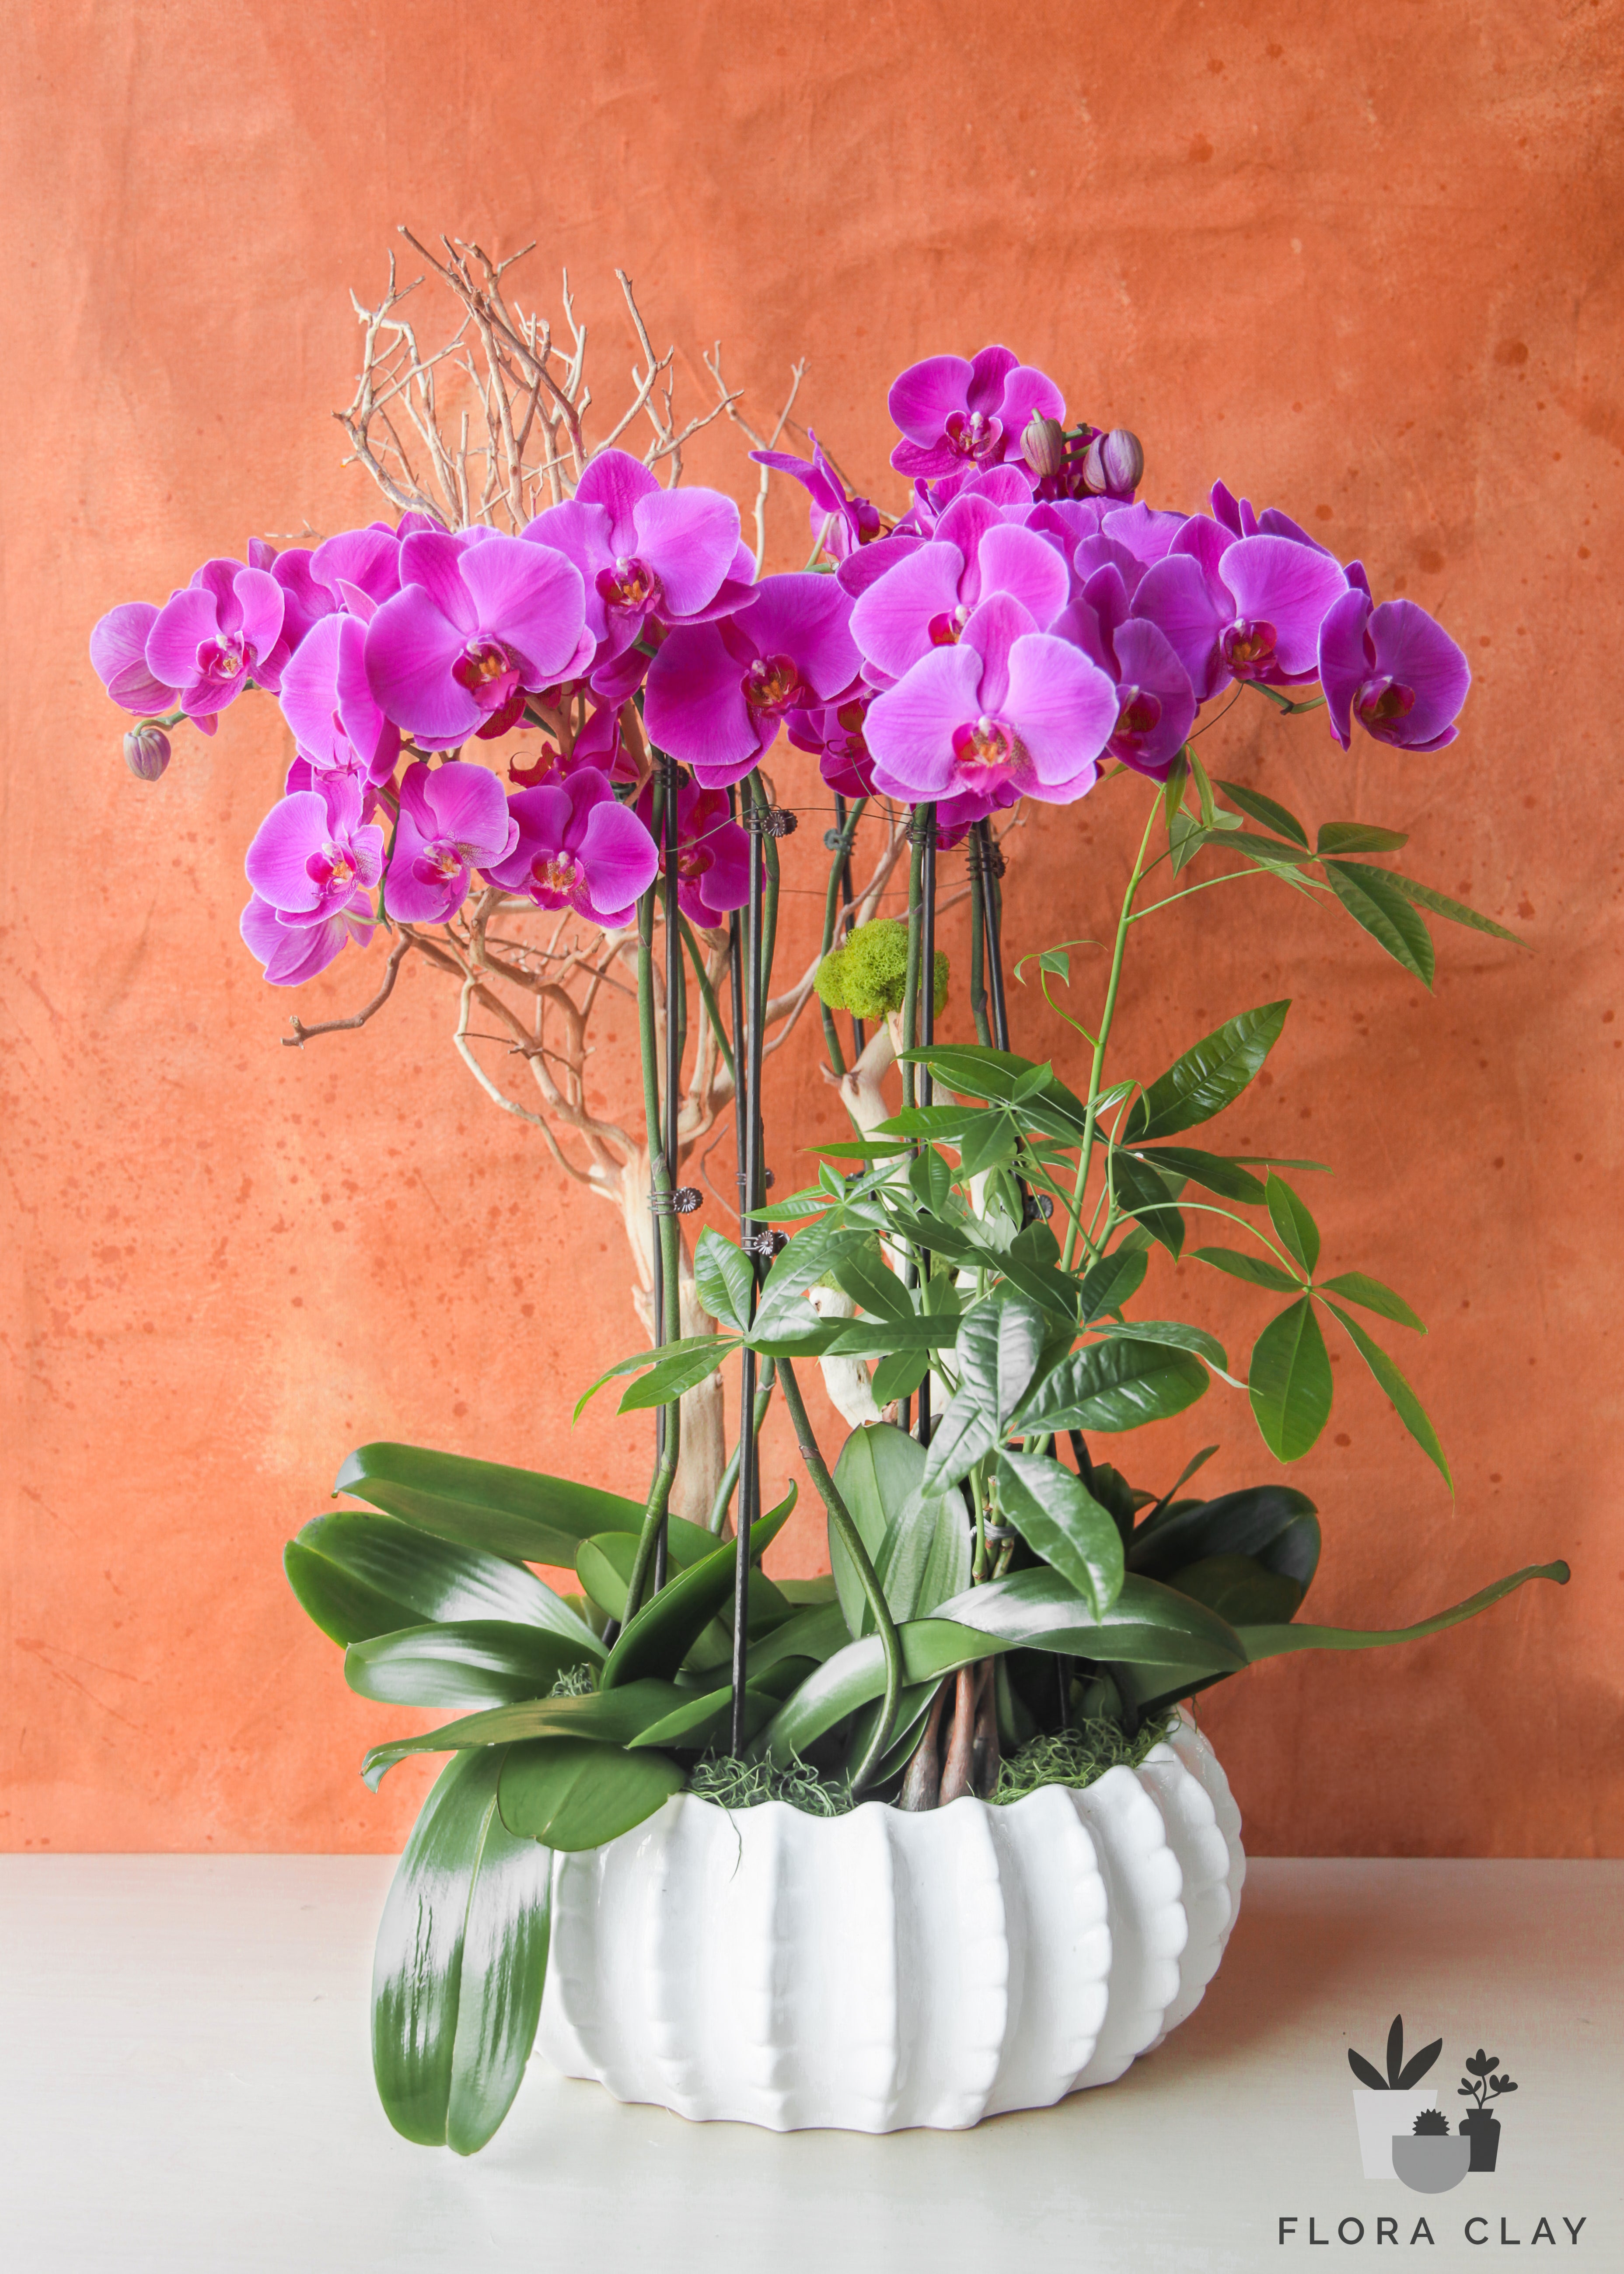 dancing-queen-orchid-arrangement-floraclay-1.jpg